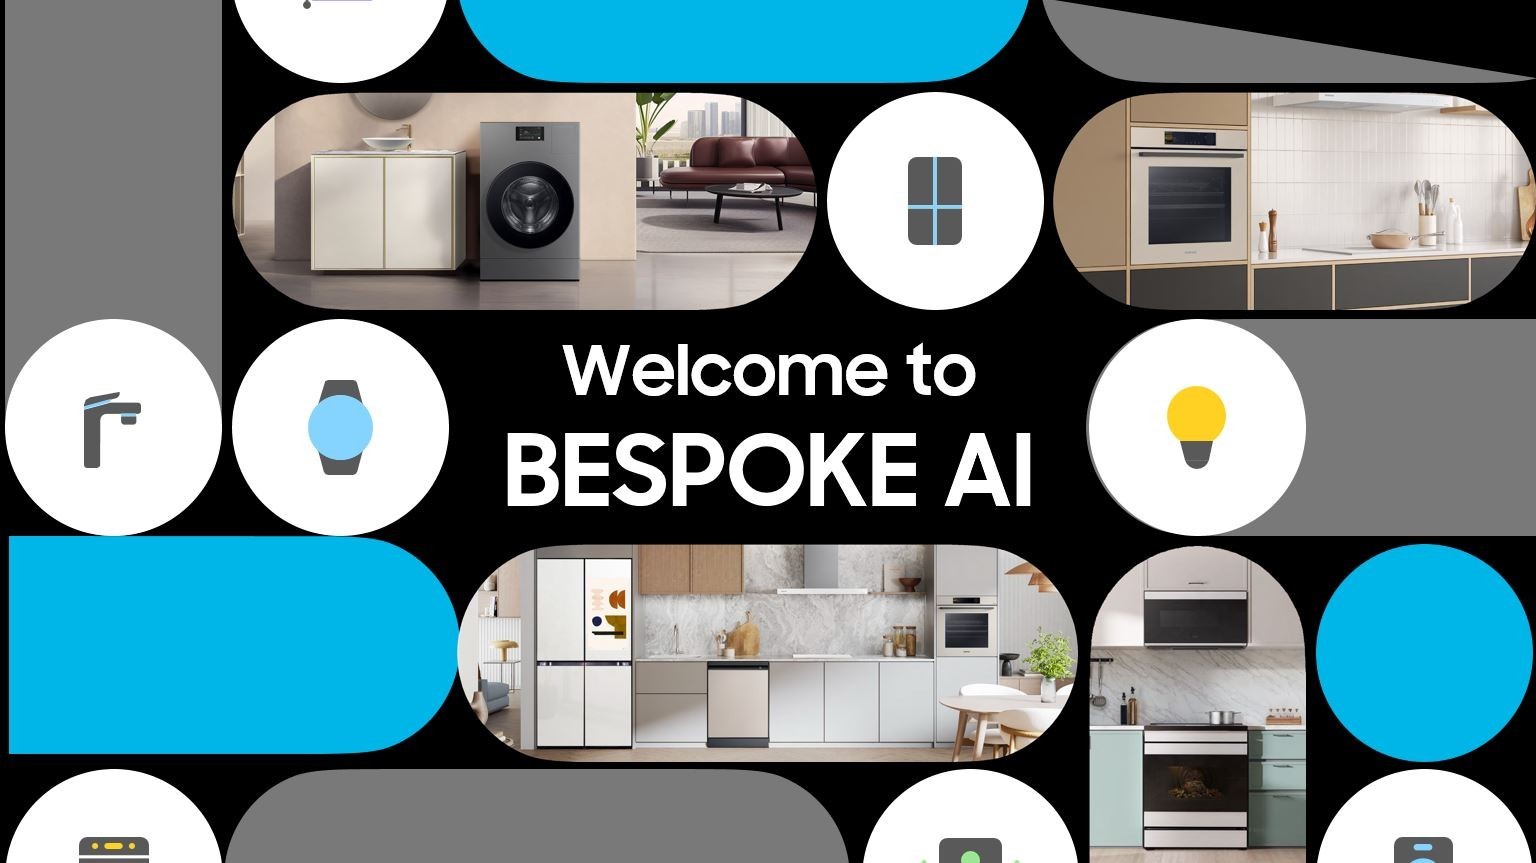 Samsung ја претстави најновата линија на апарати за домаќинство на глобалниот настан „BESPOKE AI “ со подобрена поврзаност и вештачка интелигенција